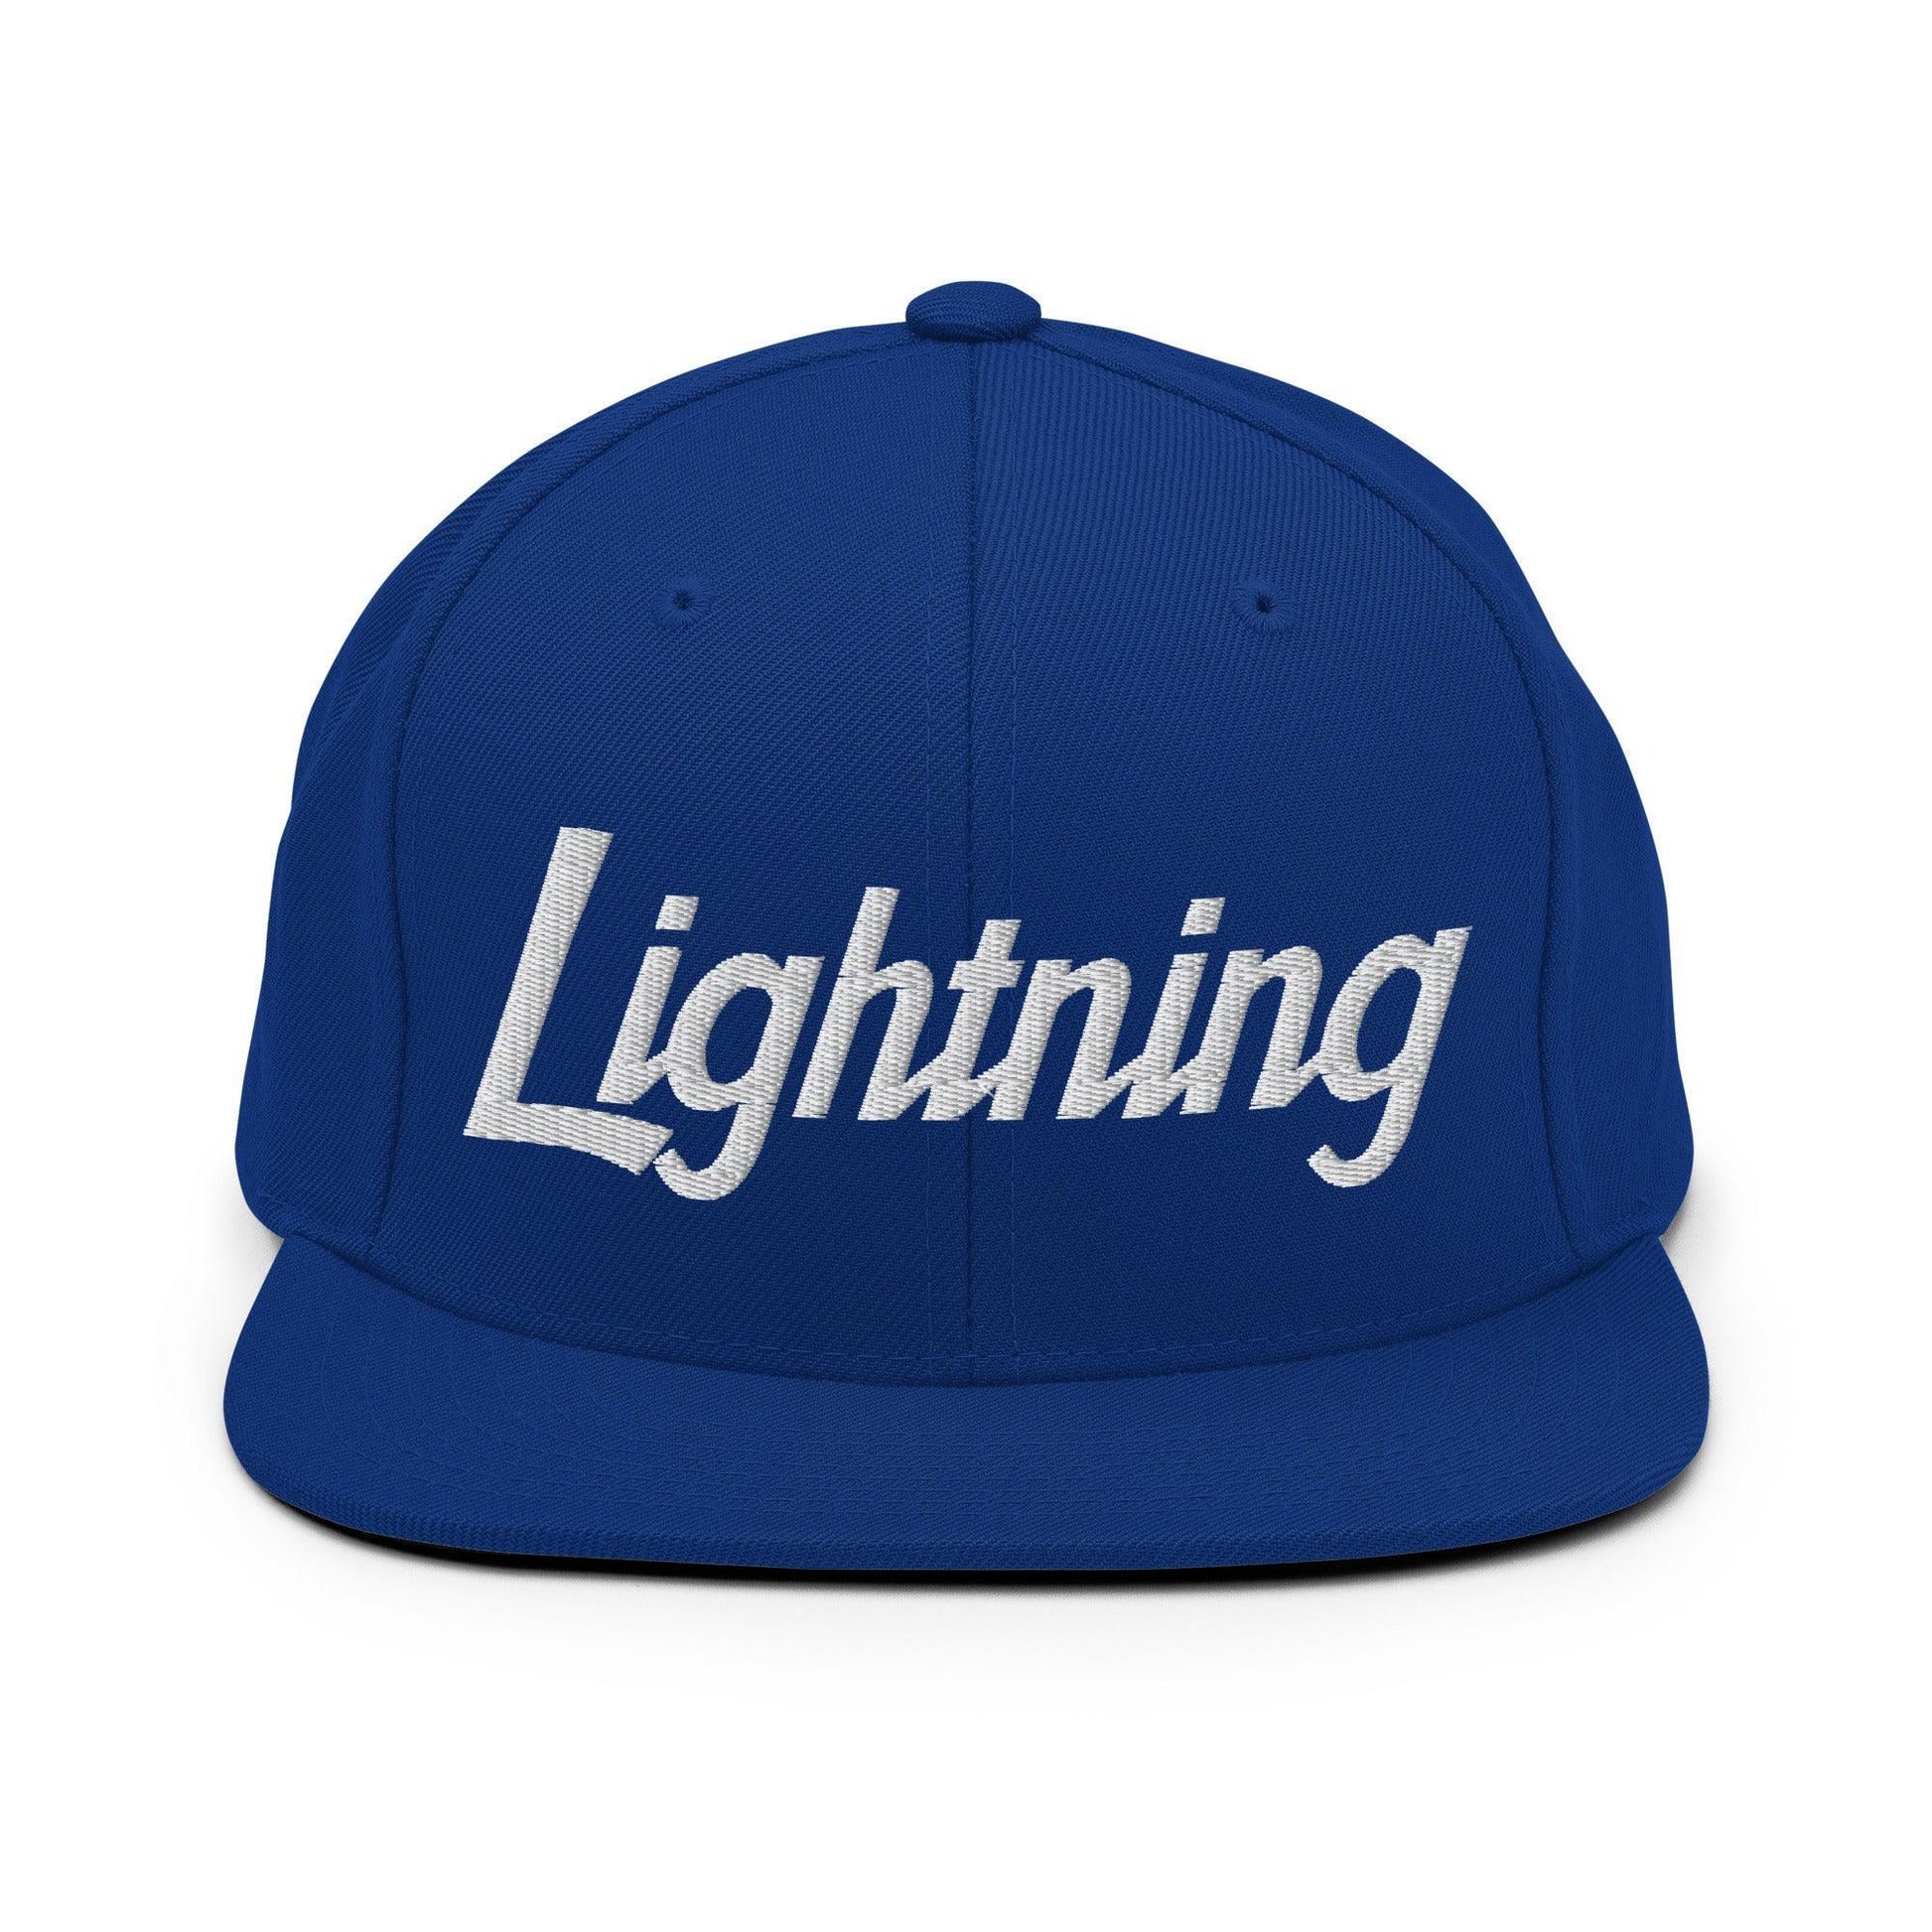 Lightning School Mascot Script Snapback Hat Royal Blue